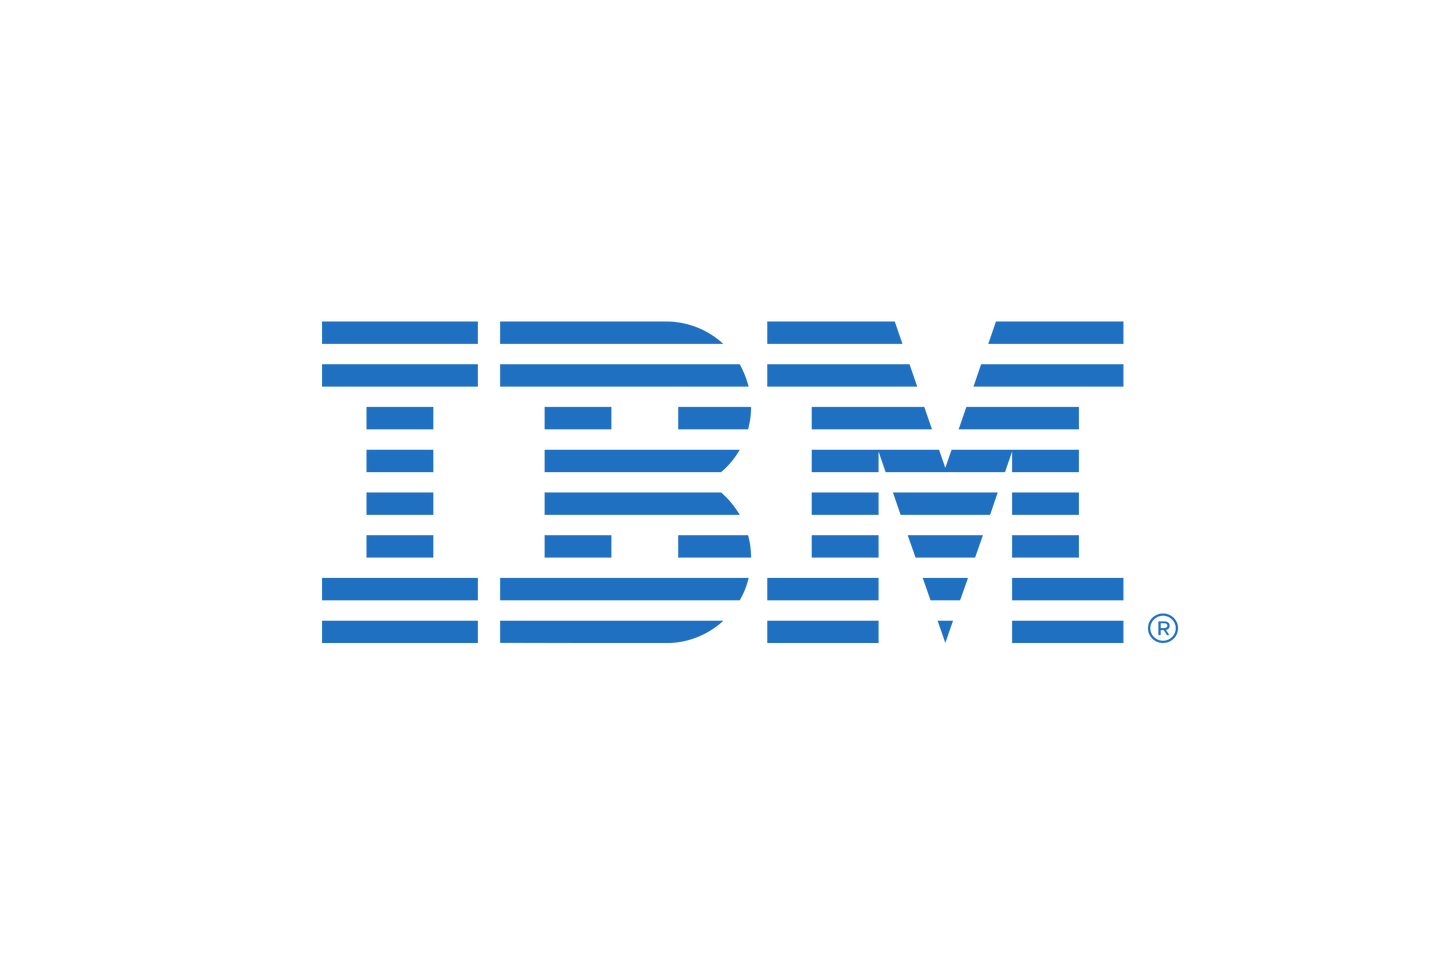 IBM Expert Labs Essential Management for IBM Cloud Pak for Data - Architect Engagement per Annum